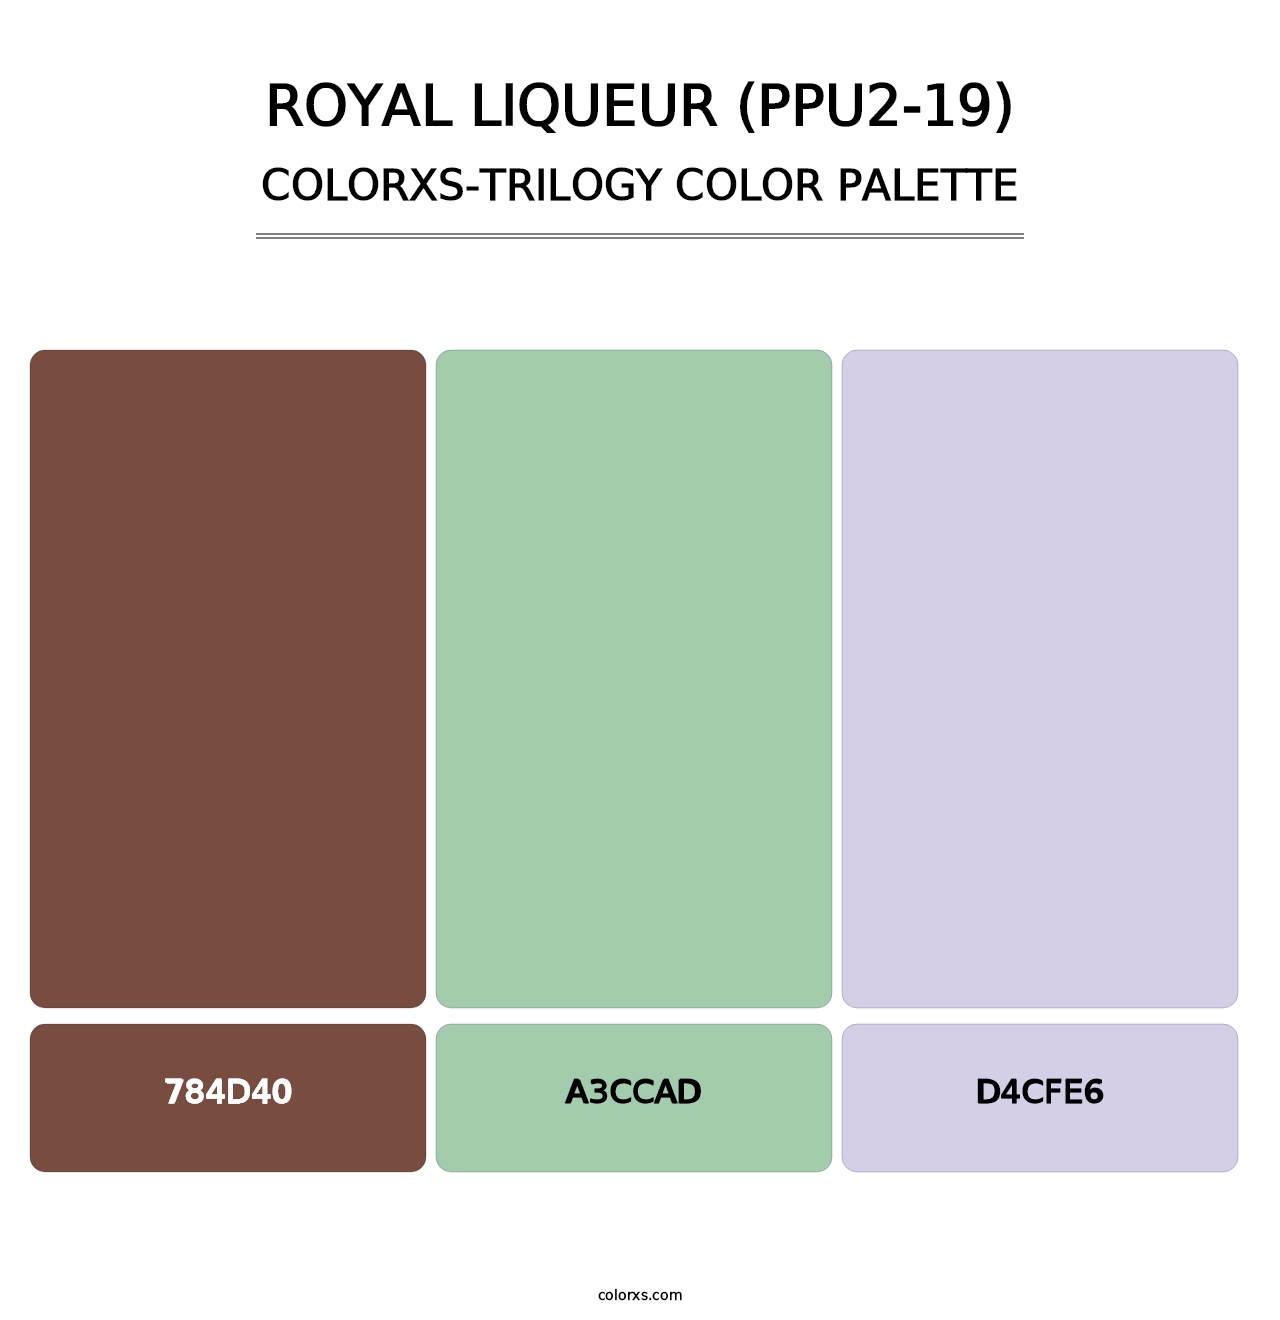 Royal Liqueur (PPU2-19) - Colorxs Trilogy Palette